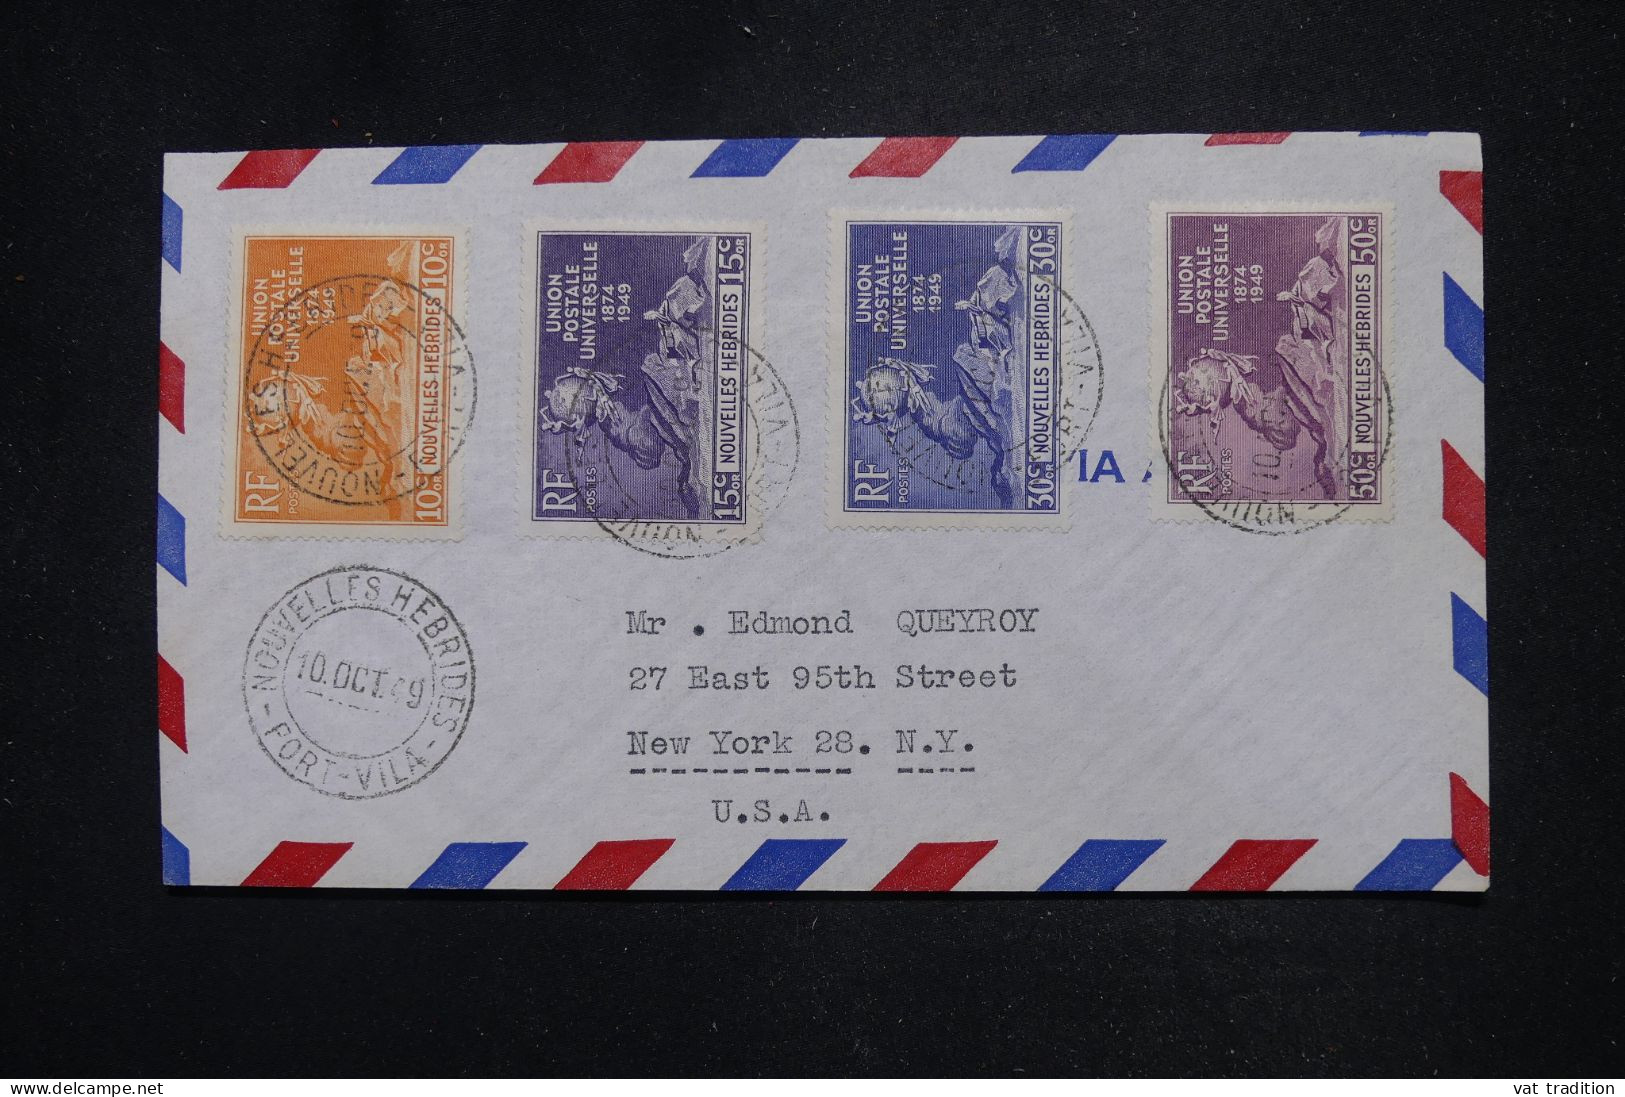 NOUVELLE HEBRIDES - Série UPU Sur Enveloppe De Port Vila Pour Les USA En 1949 - L 147297 - Lettres & Documents